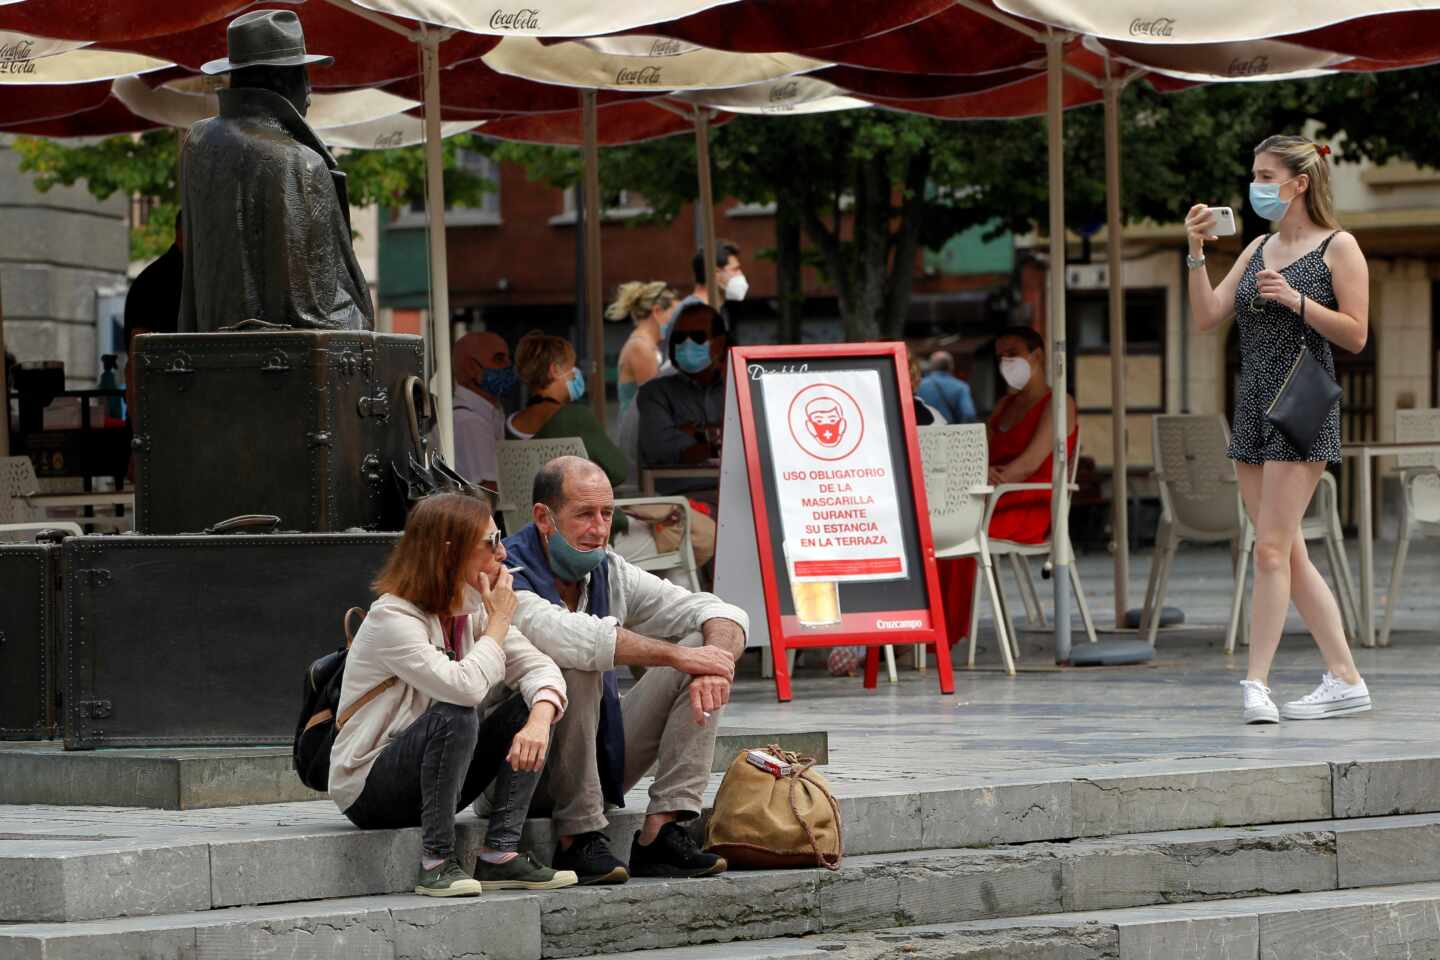 Canarias se suma a Galicia y prohíbe fumar en espacios públicos